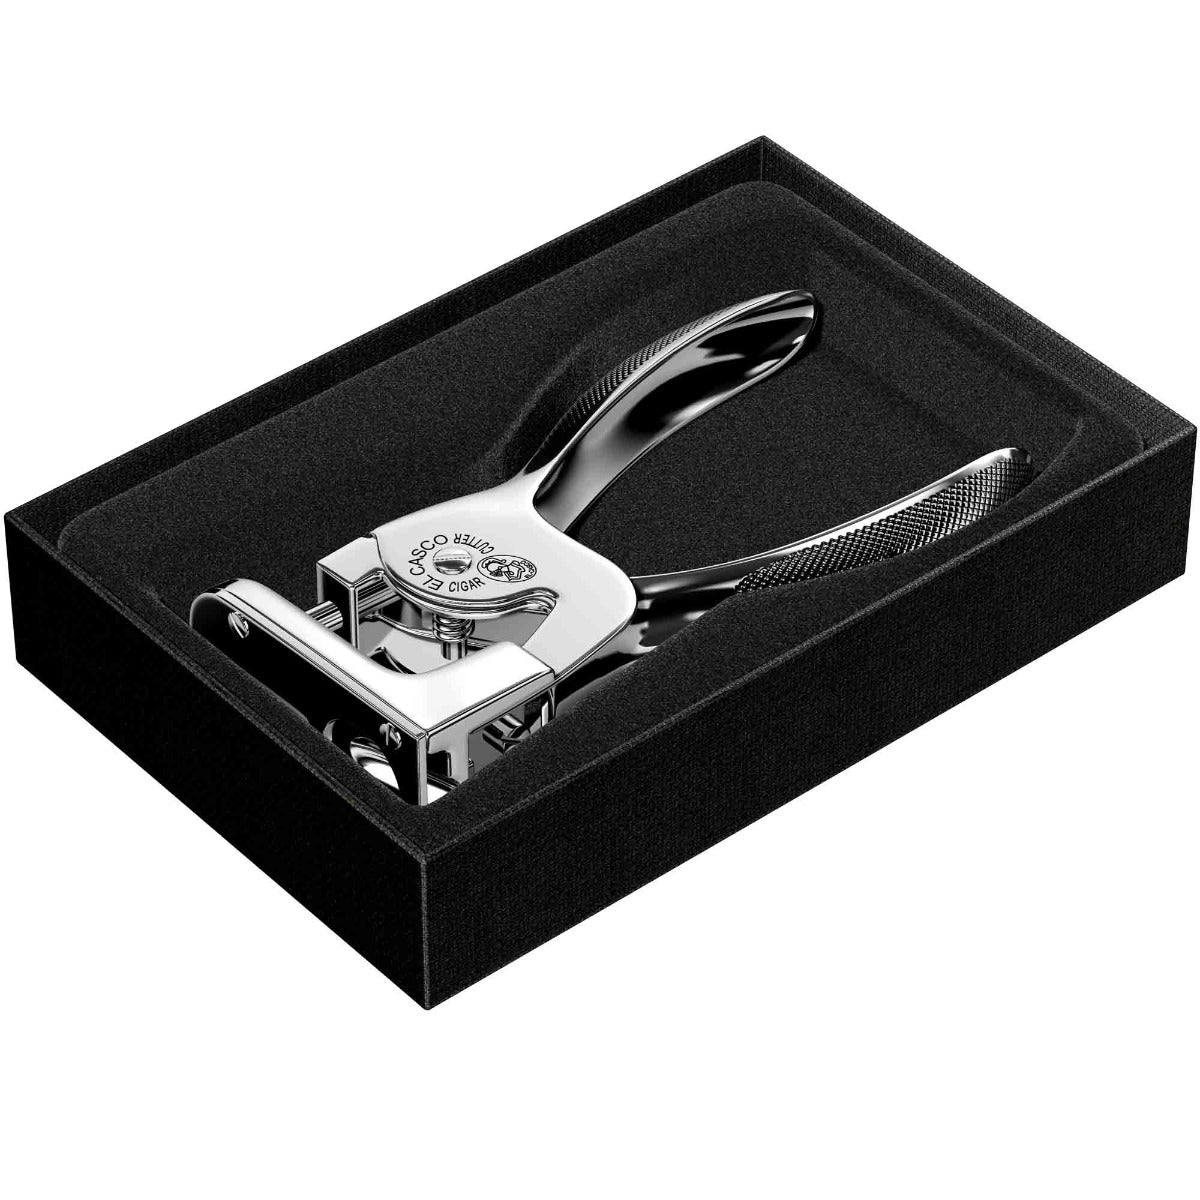 An El Casco Chrome Cigar Cutter in a black box.